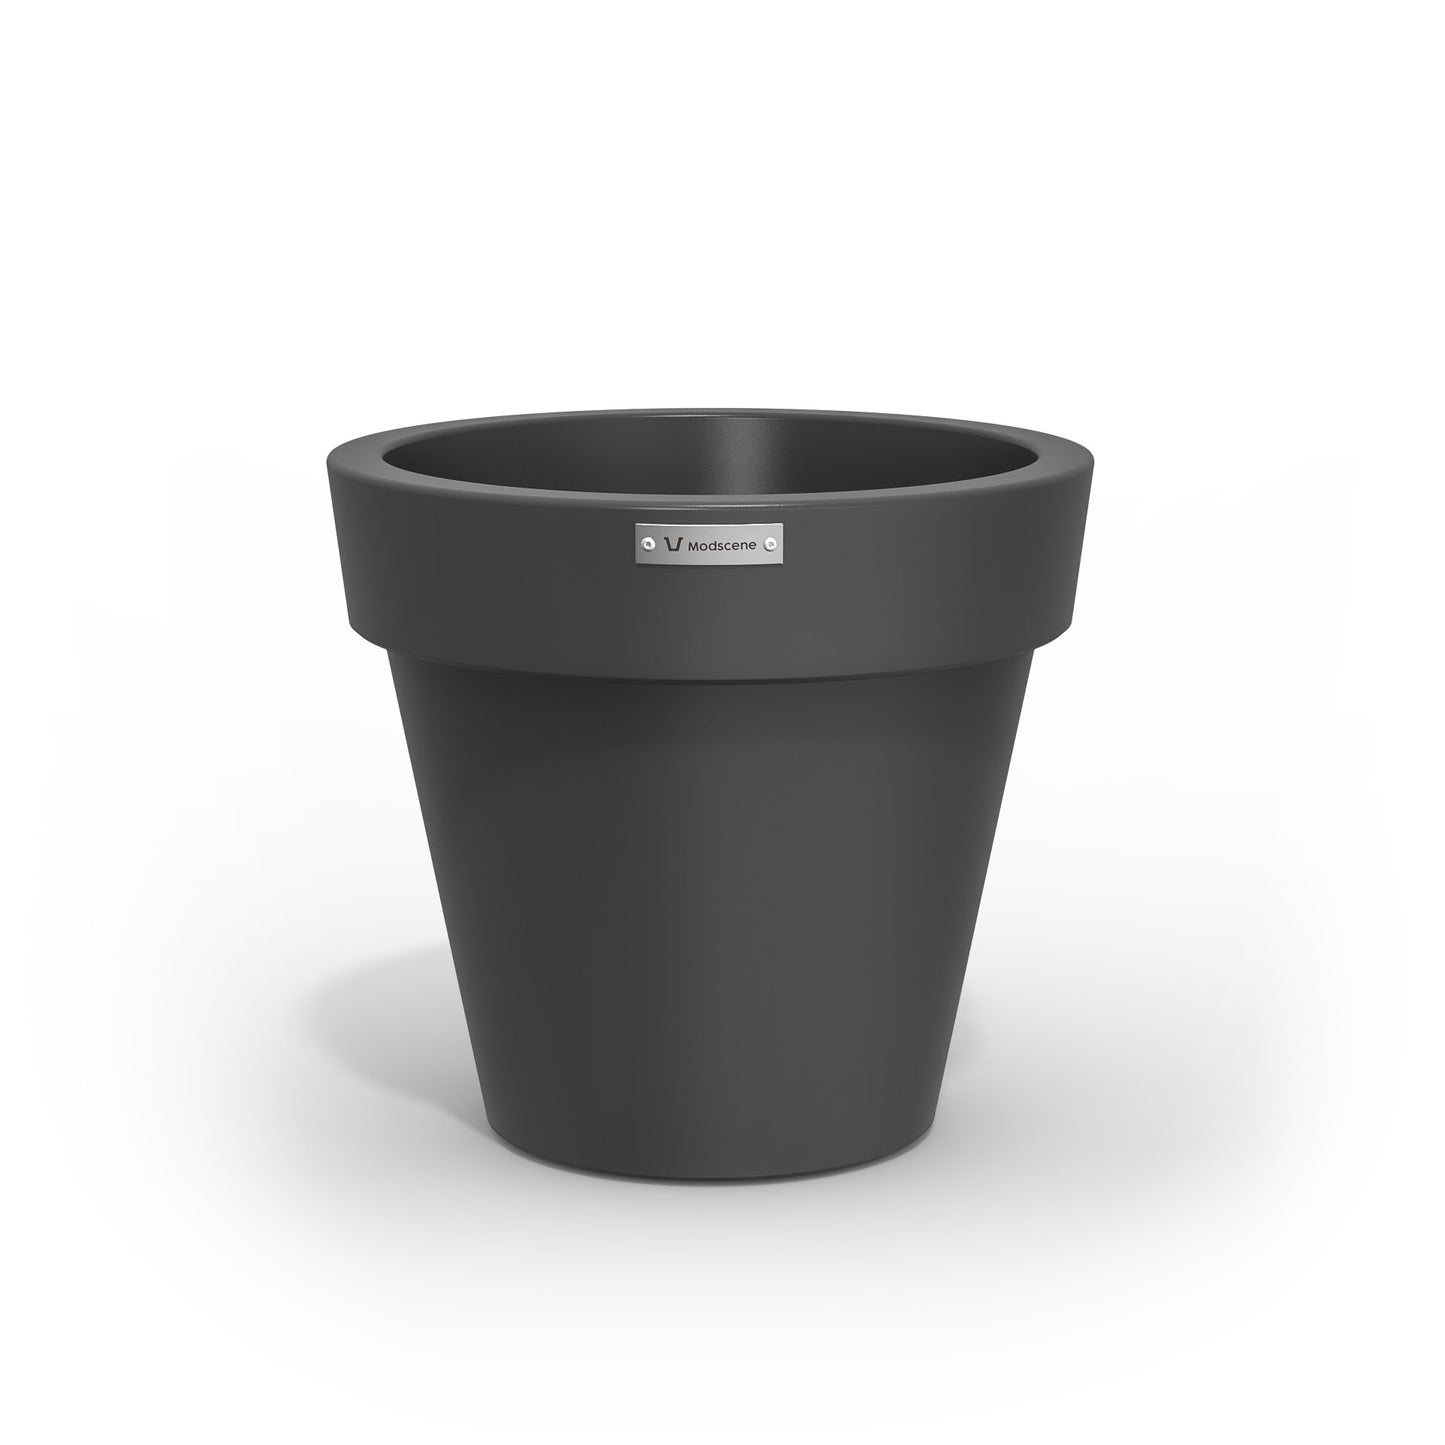 Small Modscene plastic planter pot in a dark grey colour. NZ made.